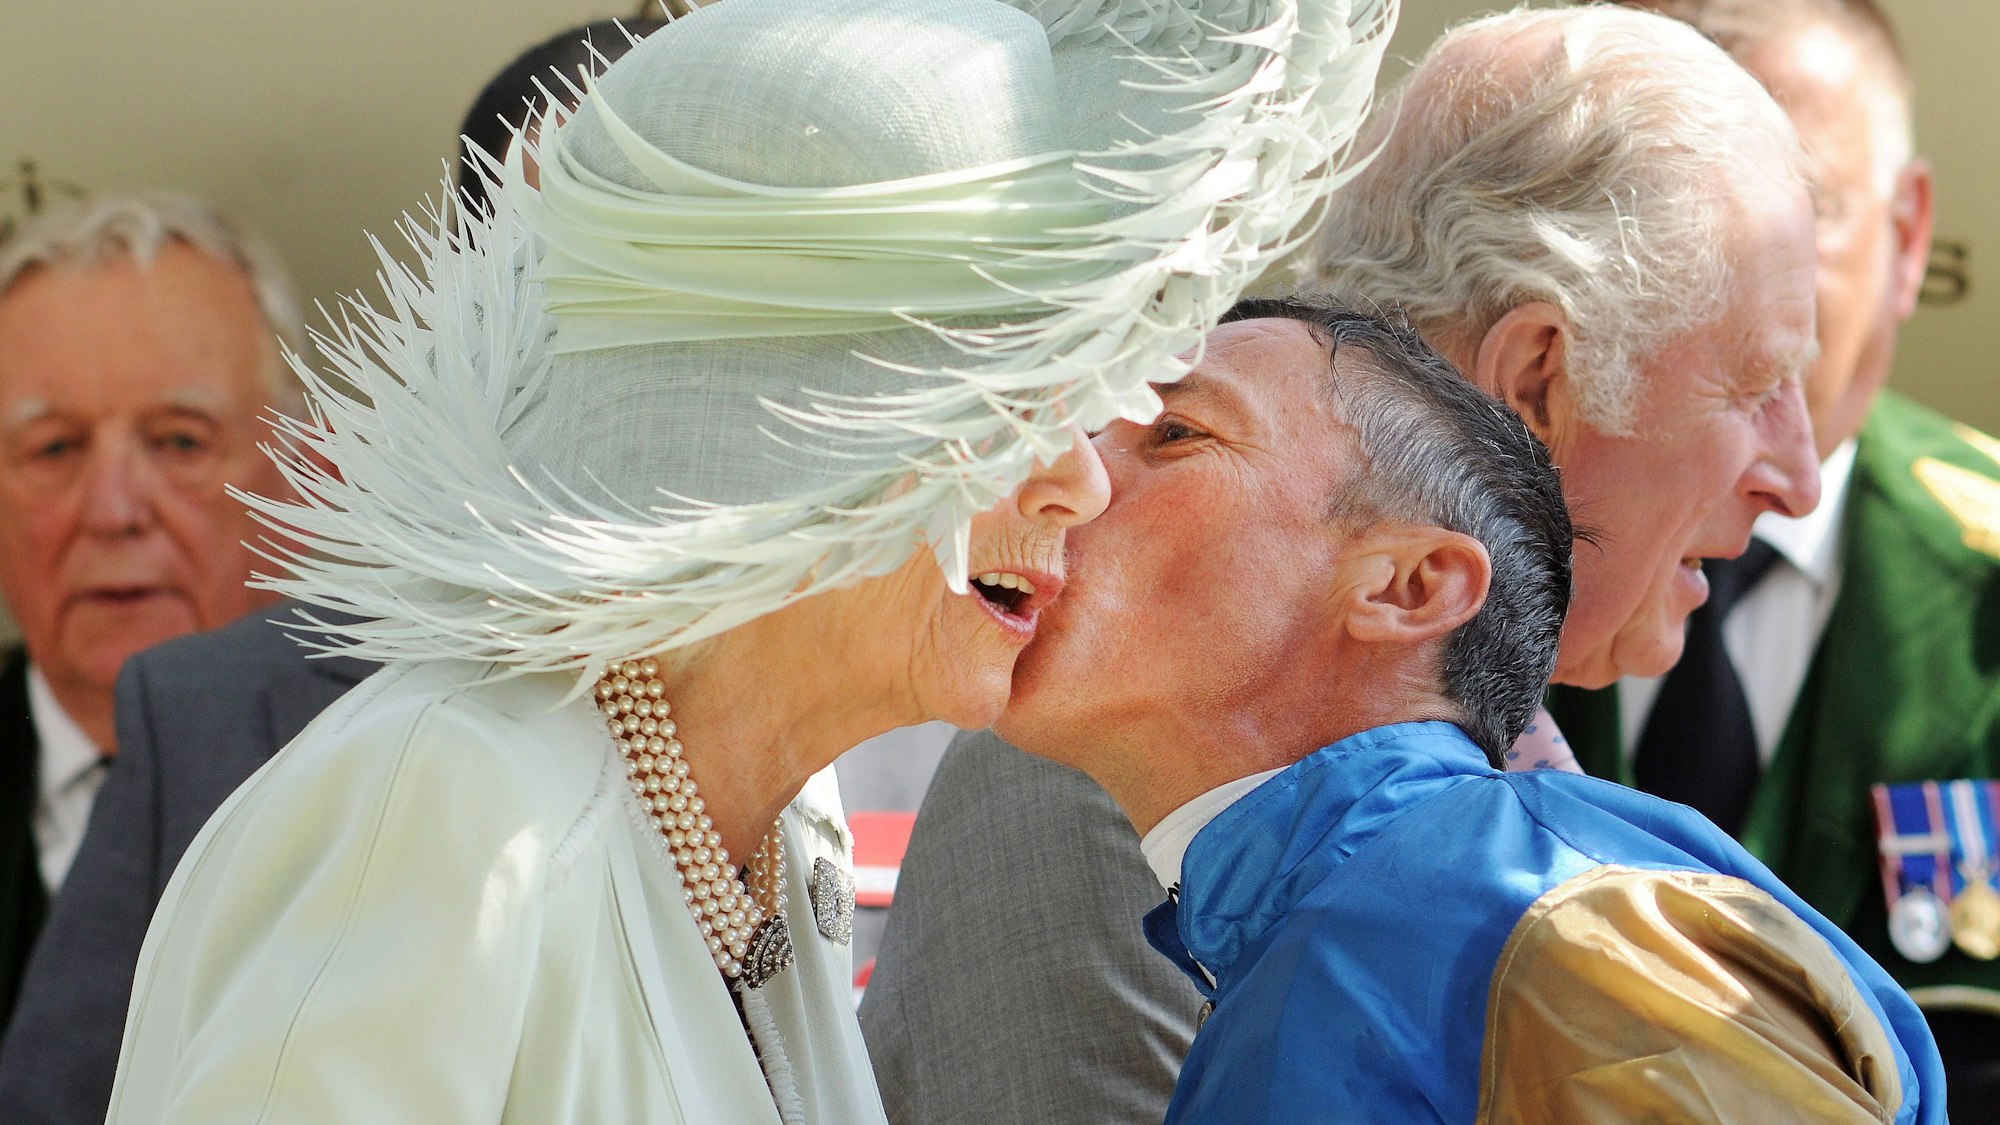 Frankie Dettori küsst Königin Camilla auf die Wange.